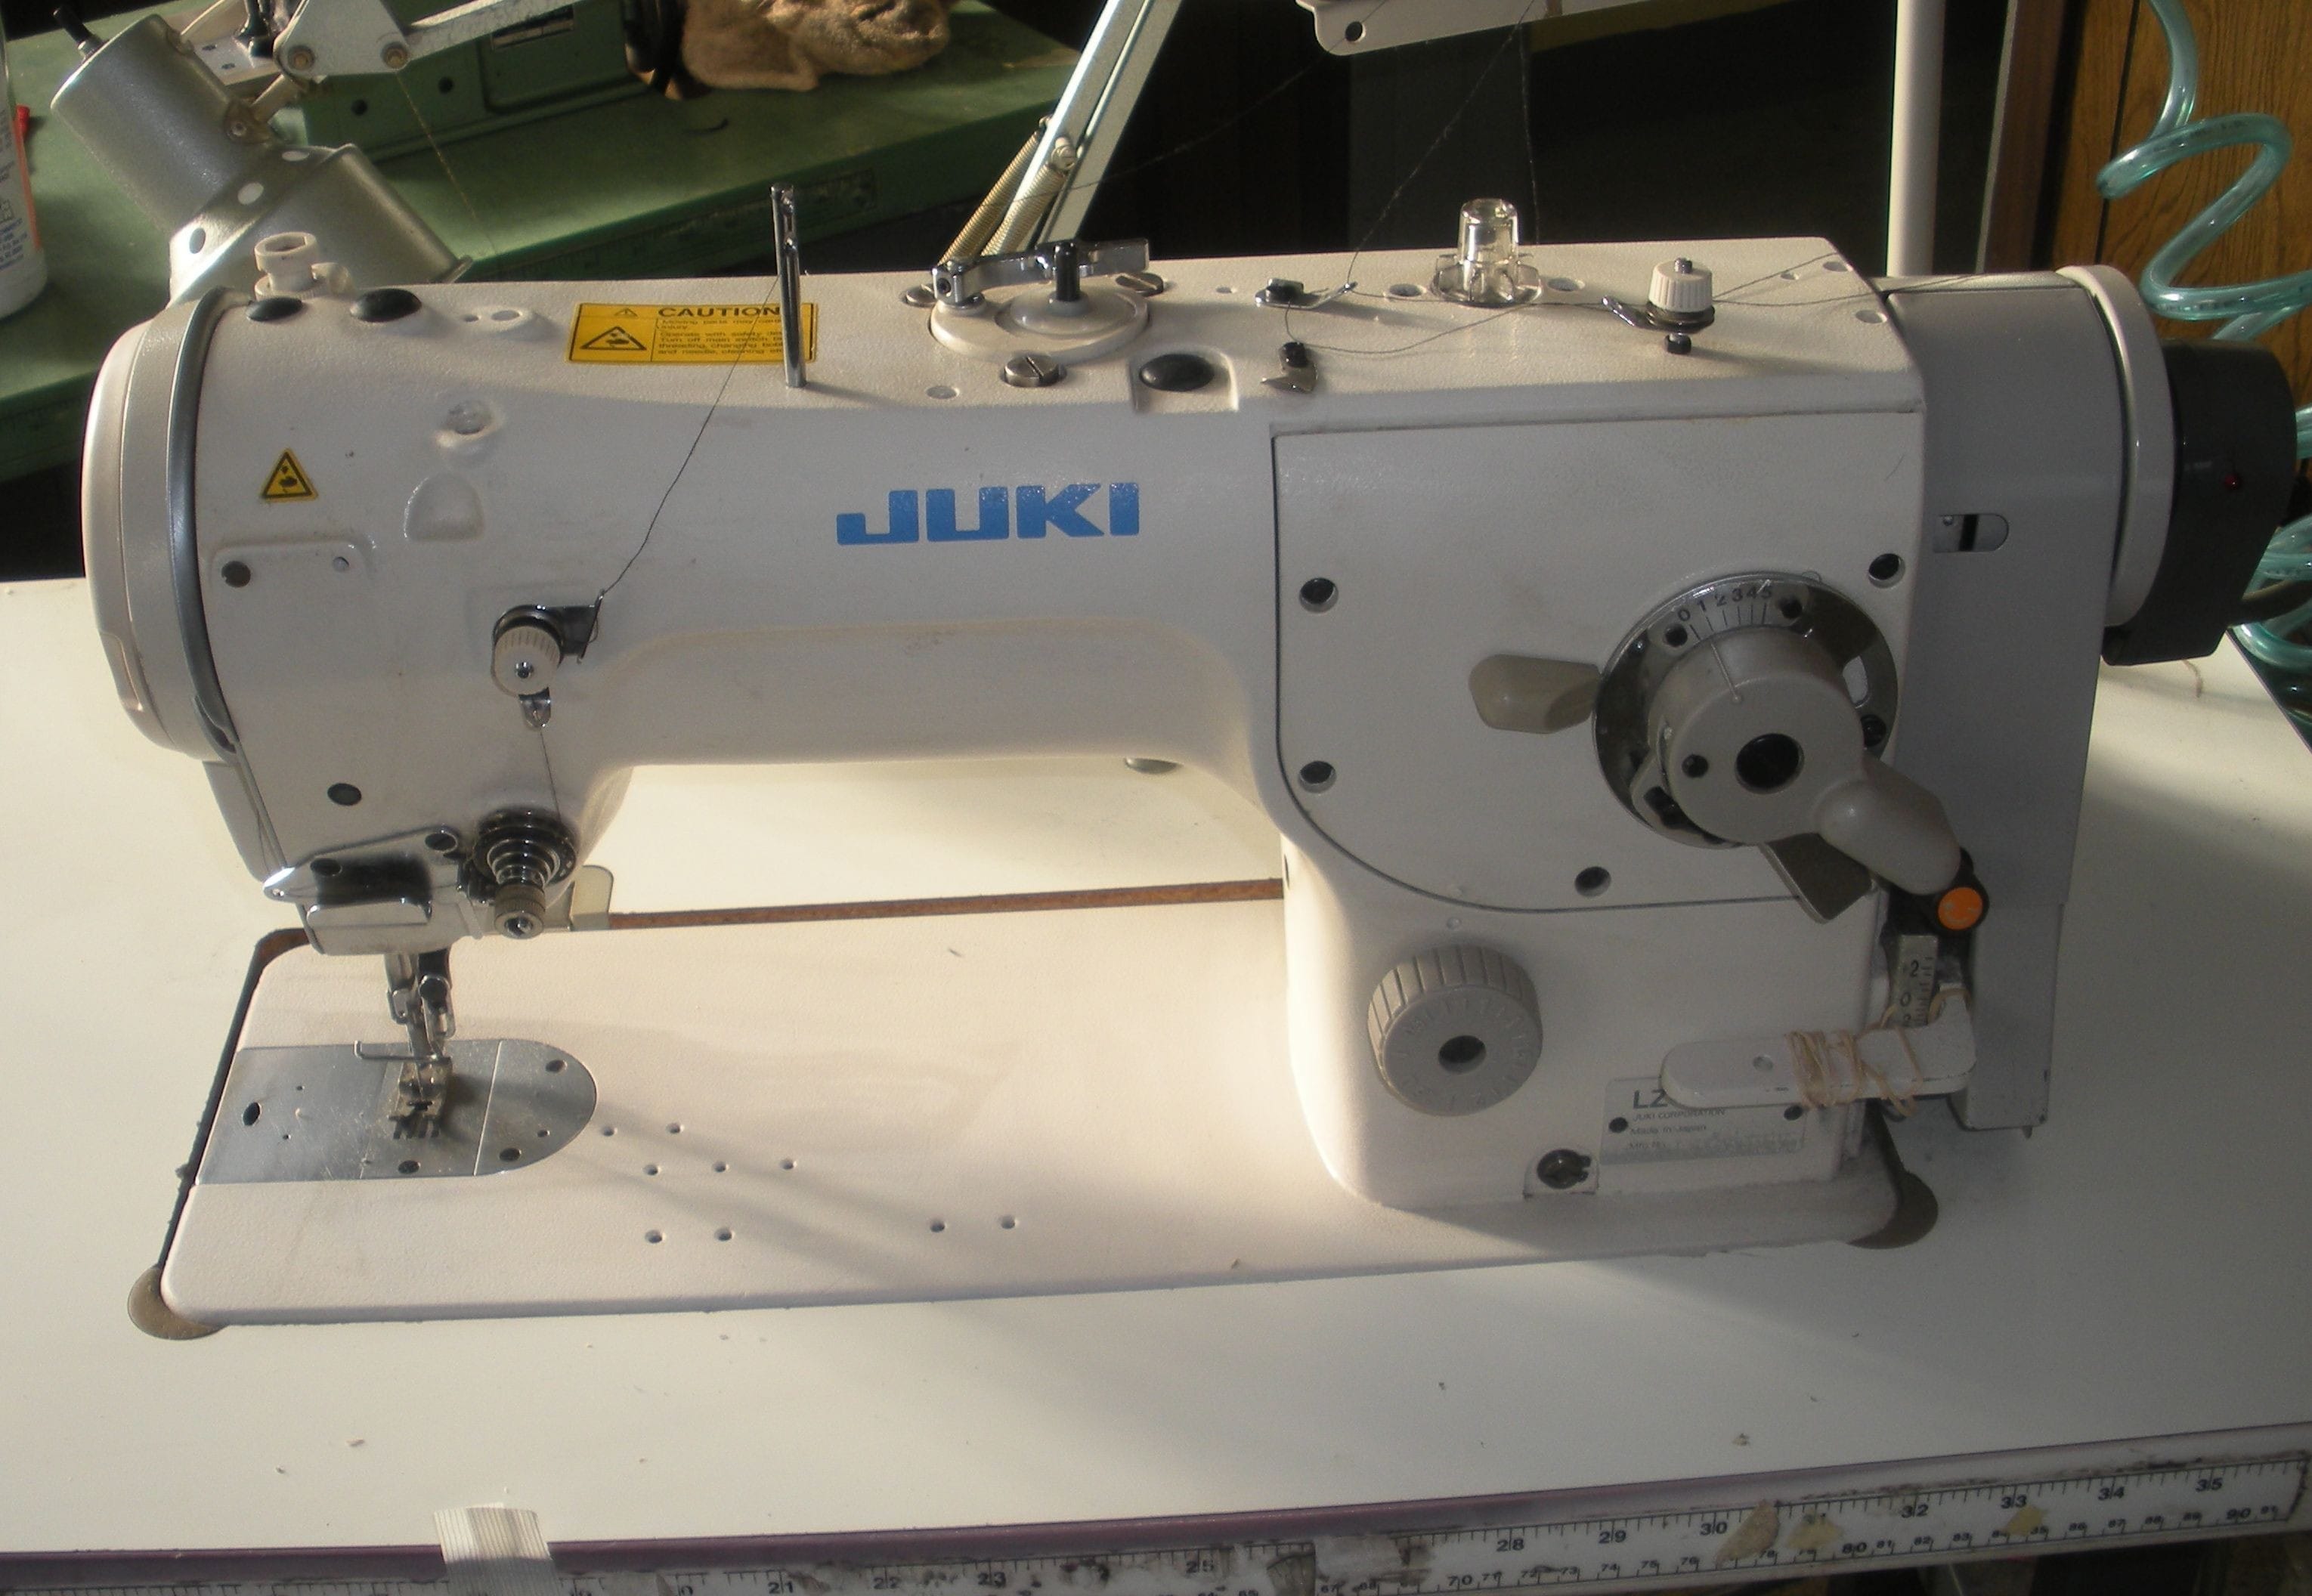 JUKI 
MODEL: LZ-2280N
STANDARD ZIG-ZAG STITCH
LOCKSTITCH
SINGLE NEEDLE 
FLAT BED